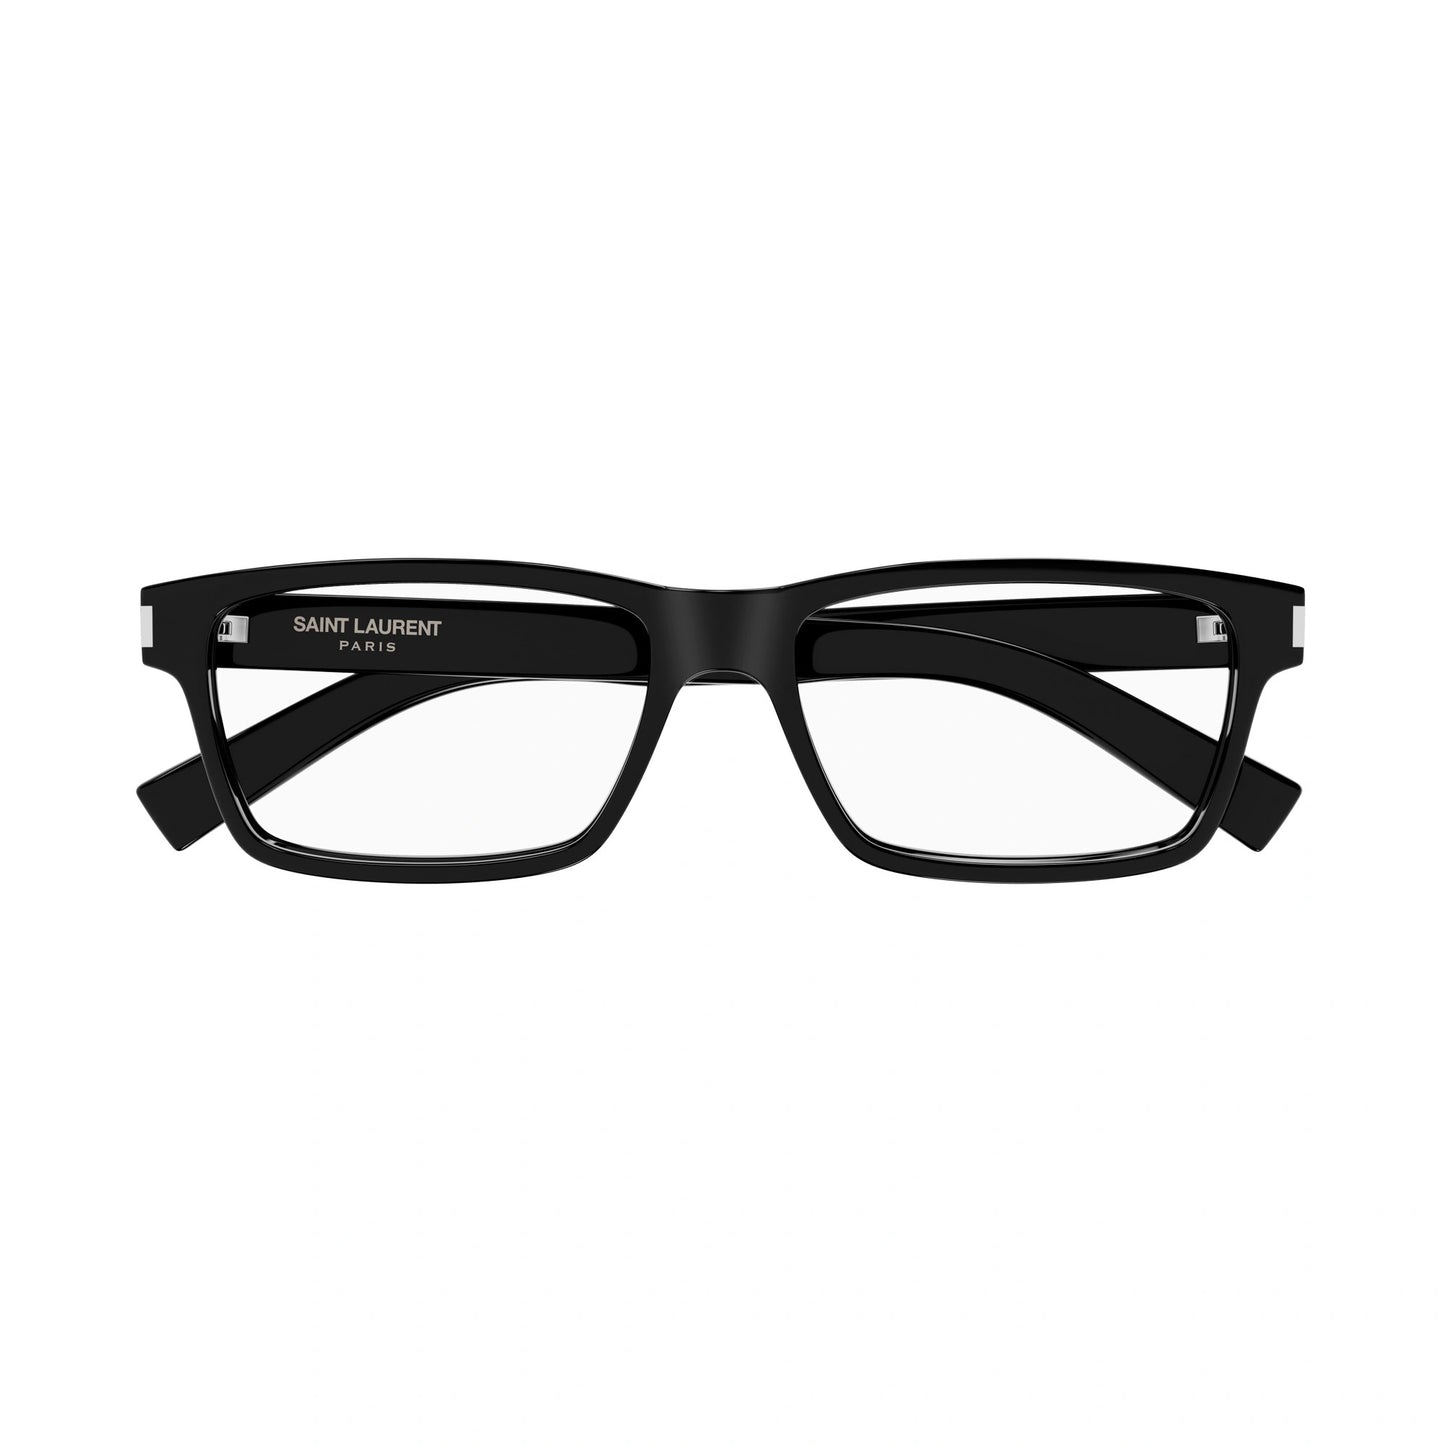 Yvest Saint Laurent SL-622-007 58mm New Eyeglasses